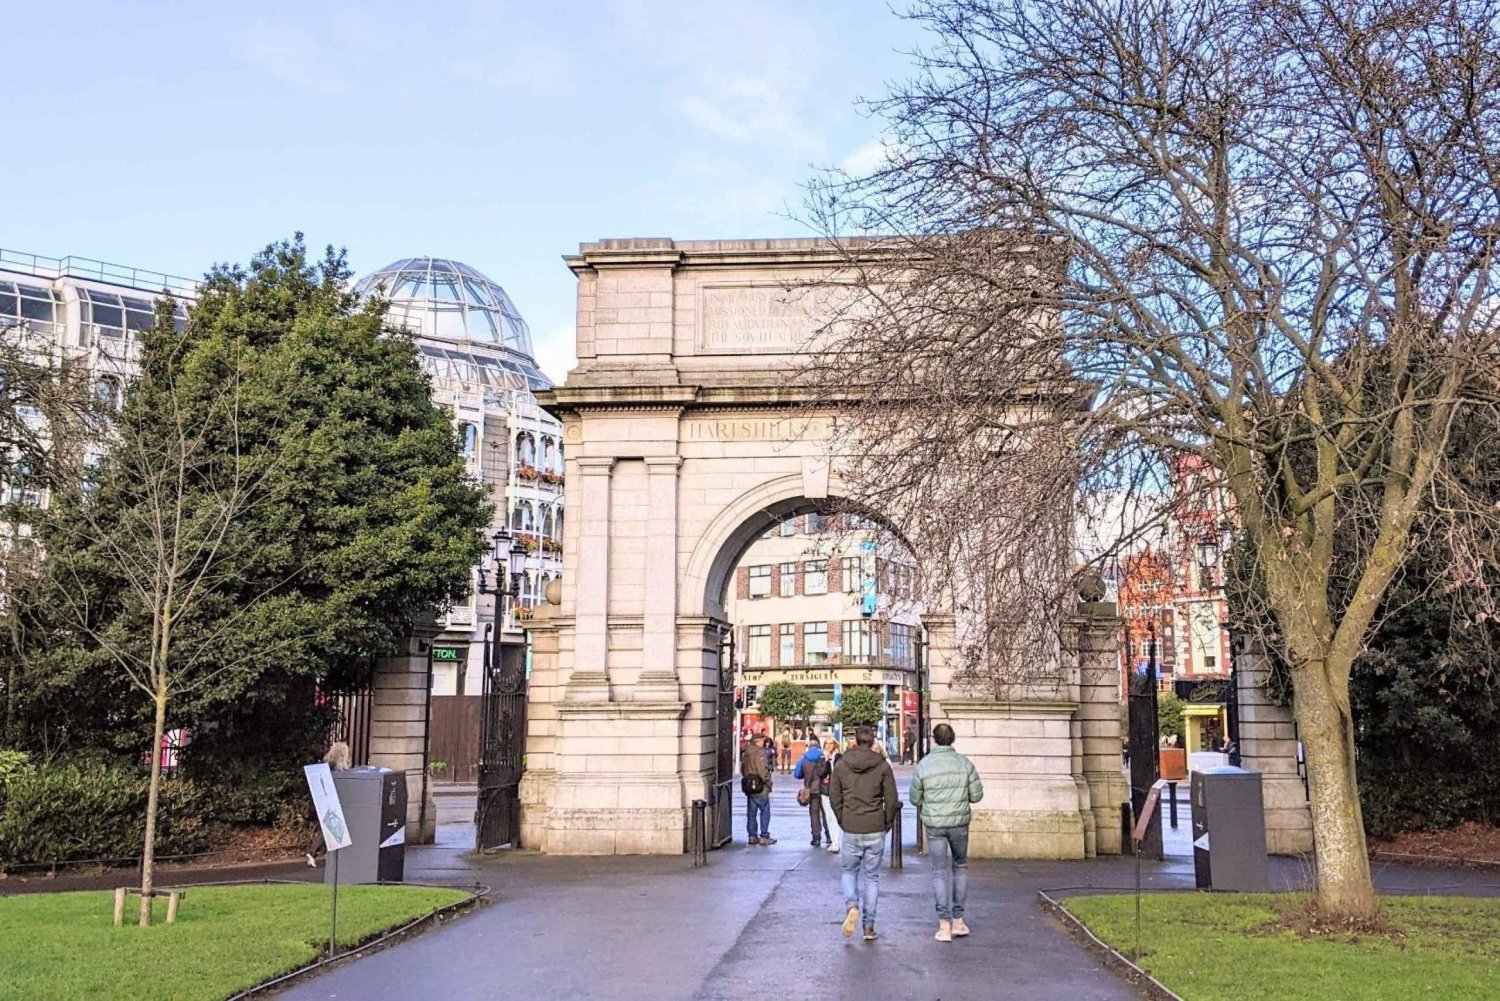 Dublin: Zelf wandeling met gids Ierse geschiedenis in St. Stephens Green